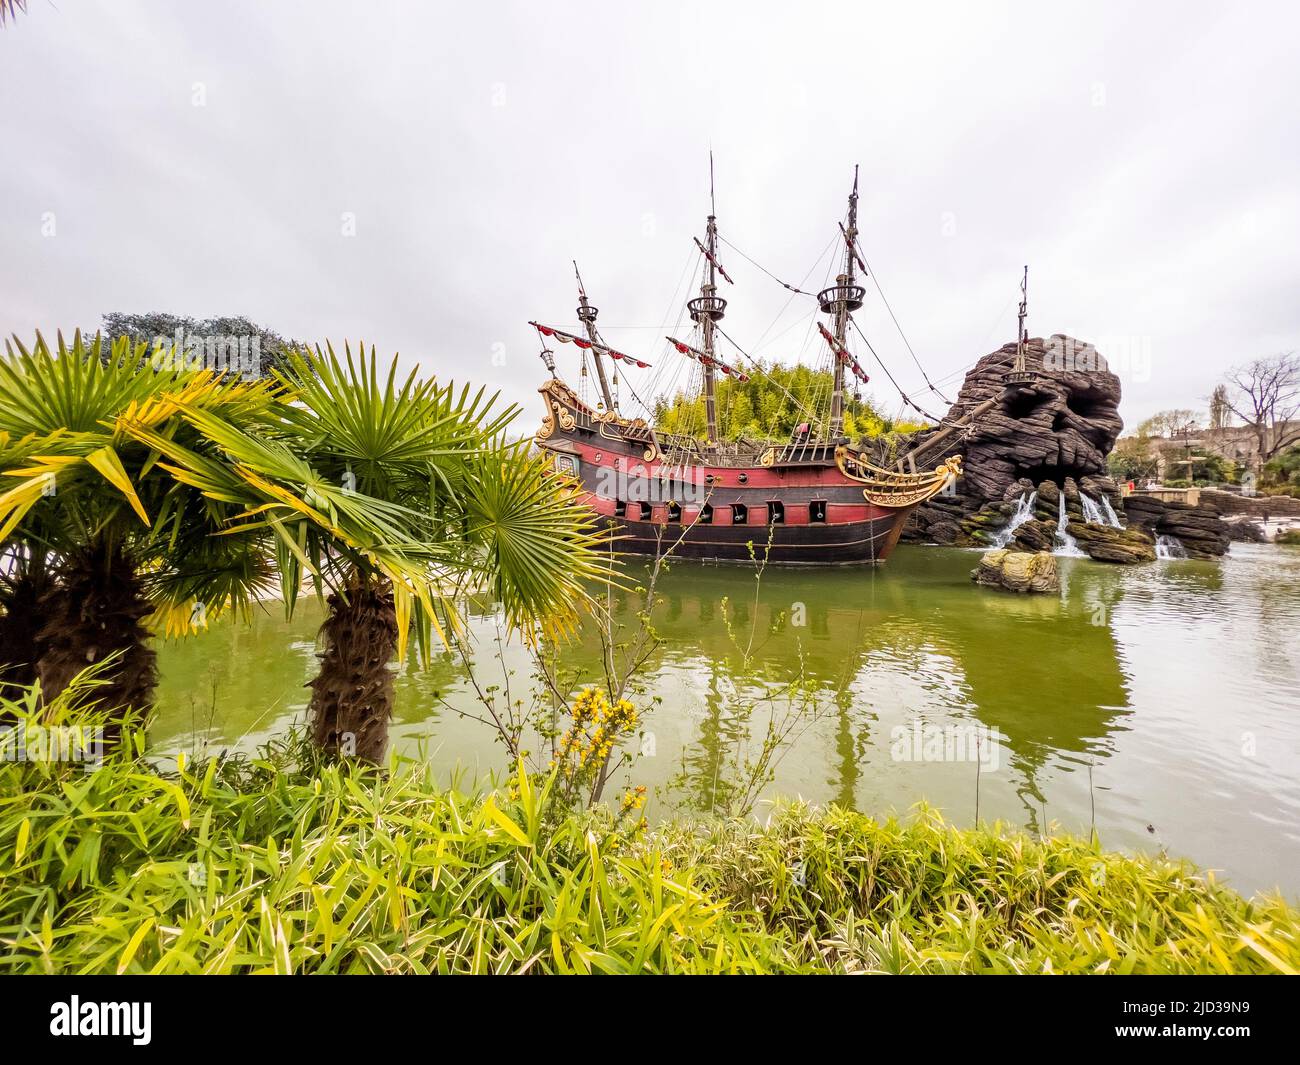 París, Francia - 04/05/2022: Piratas del Caribe escena de paseos y lugares de Disneyland París. Modelo de nave del capitán Jack Sparrow. Diseño exitoso Foto de stock